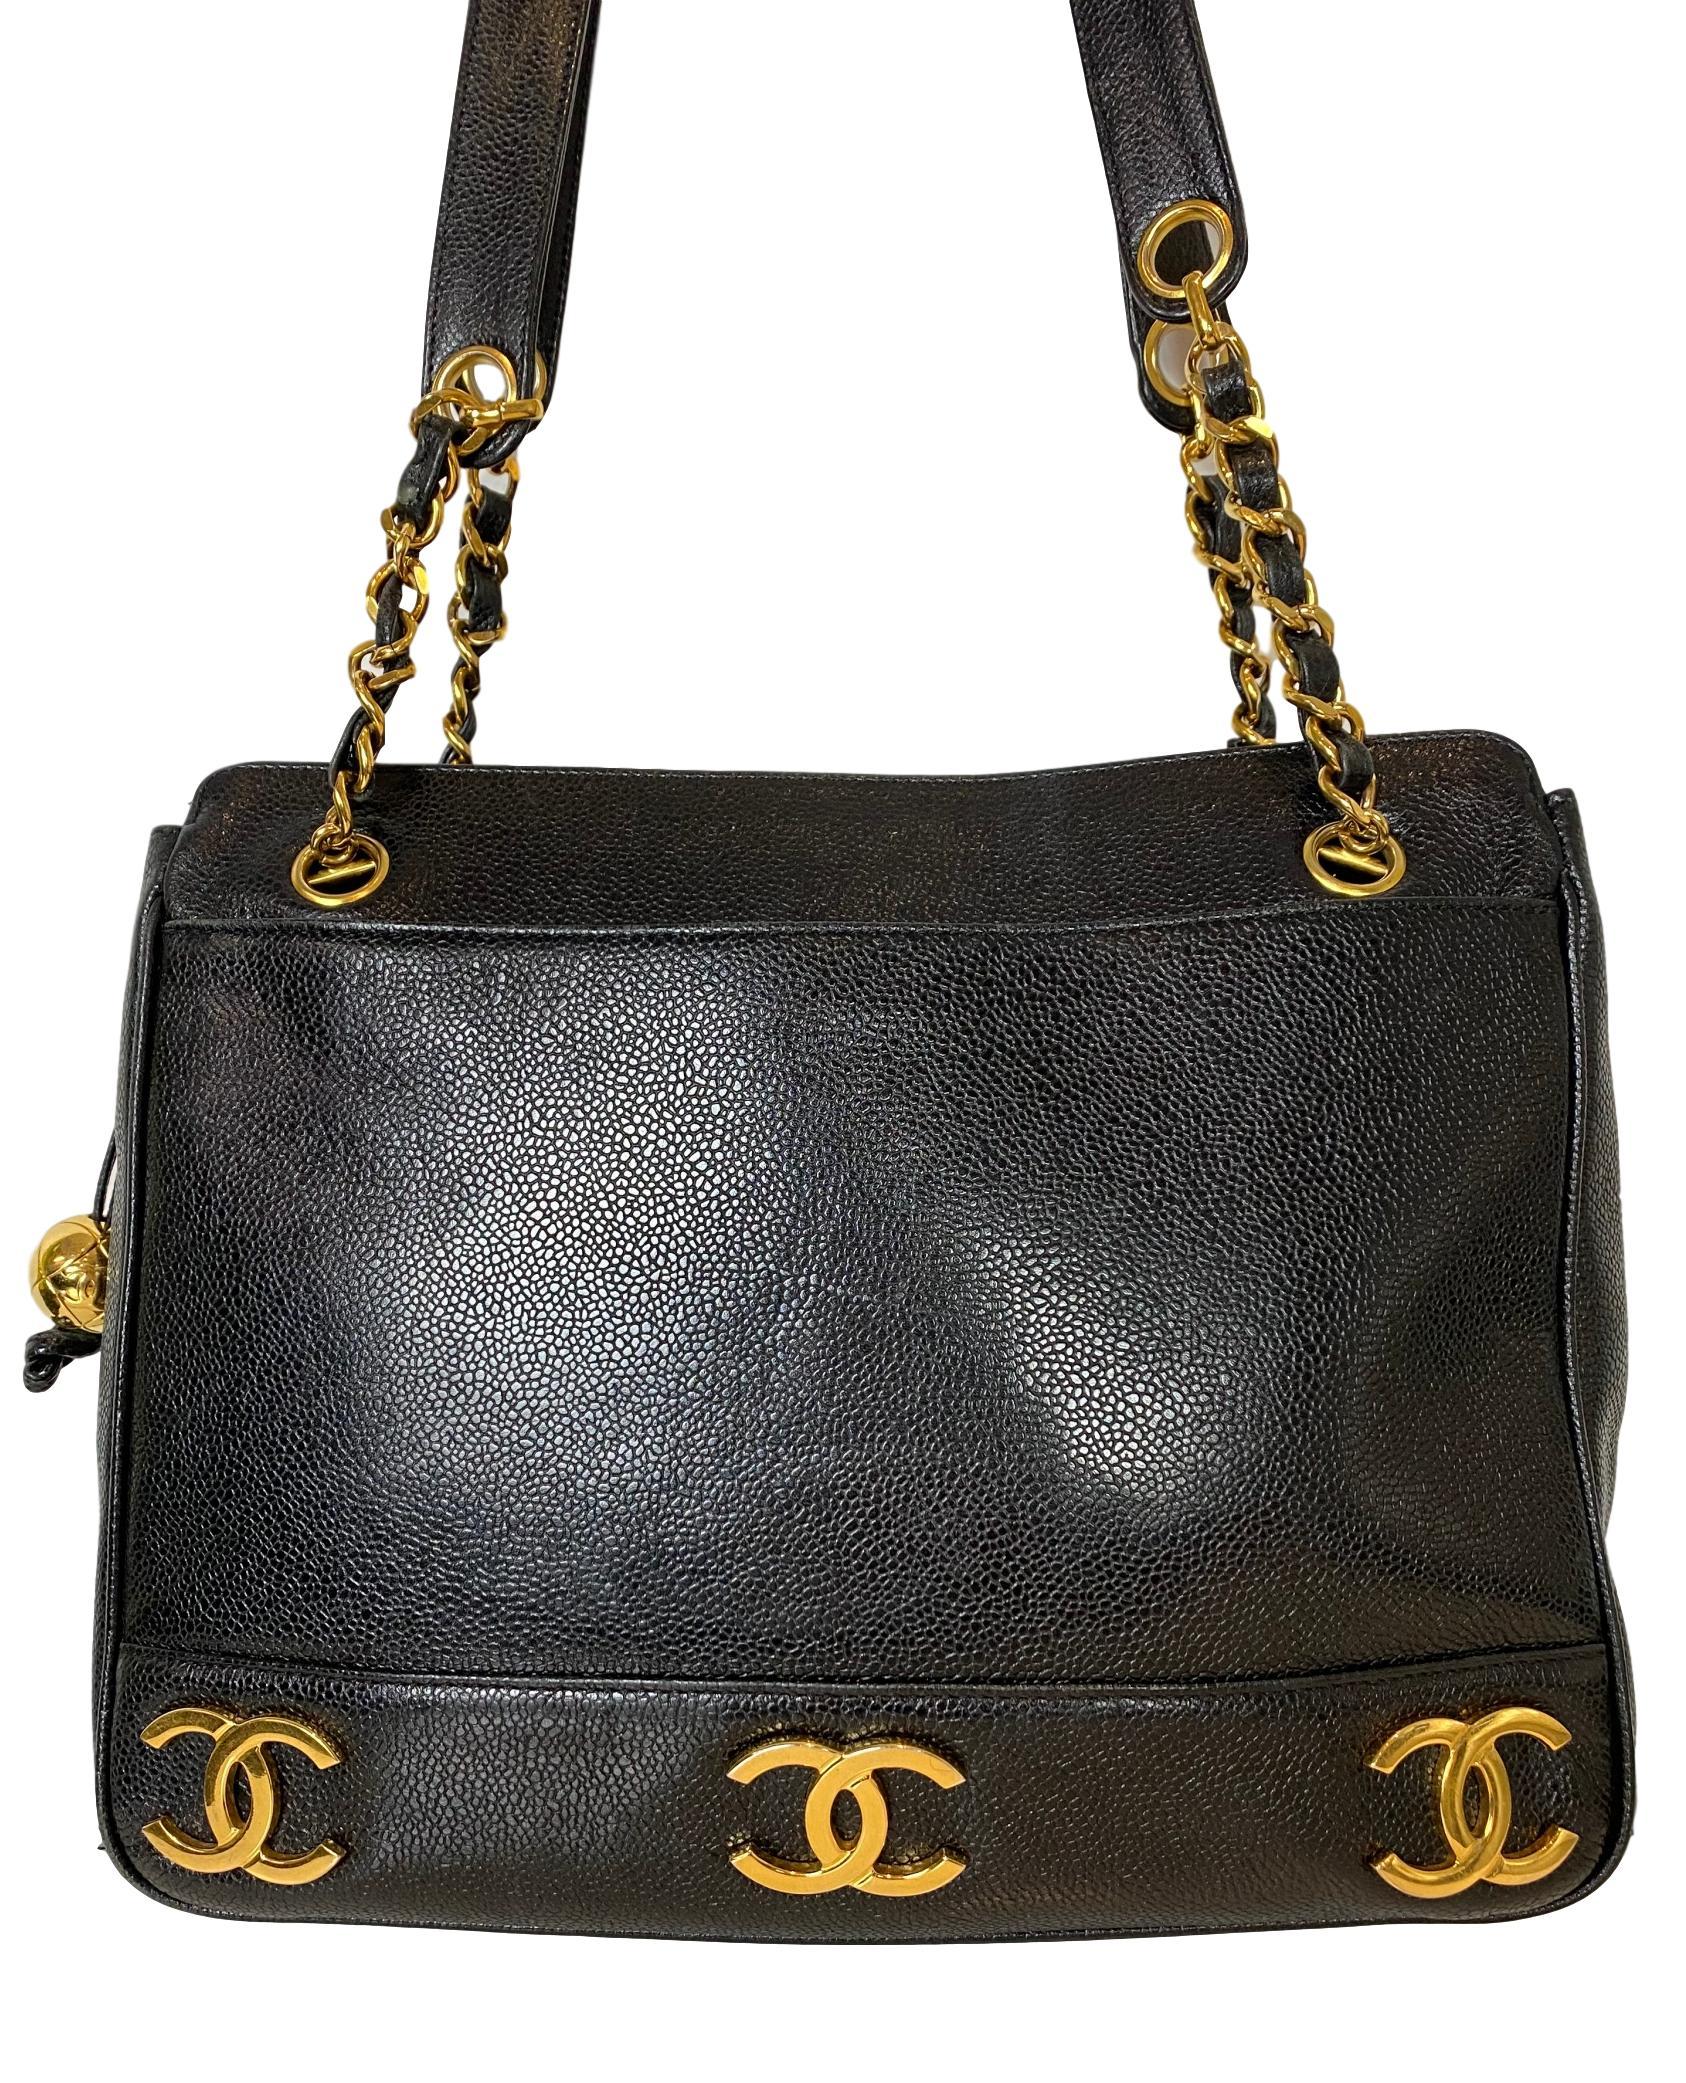 Iconic Chanel Vintage Black Caviar Leather Triple Logo Shoulder Bag, 1994 3